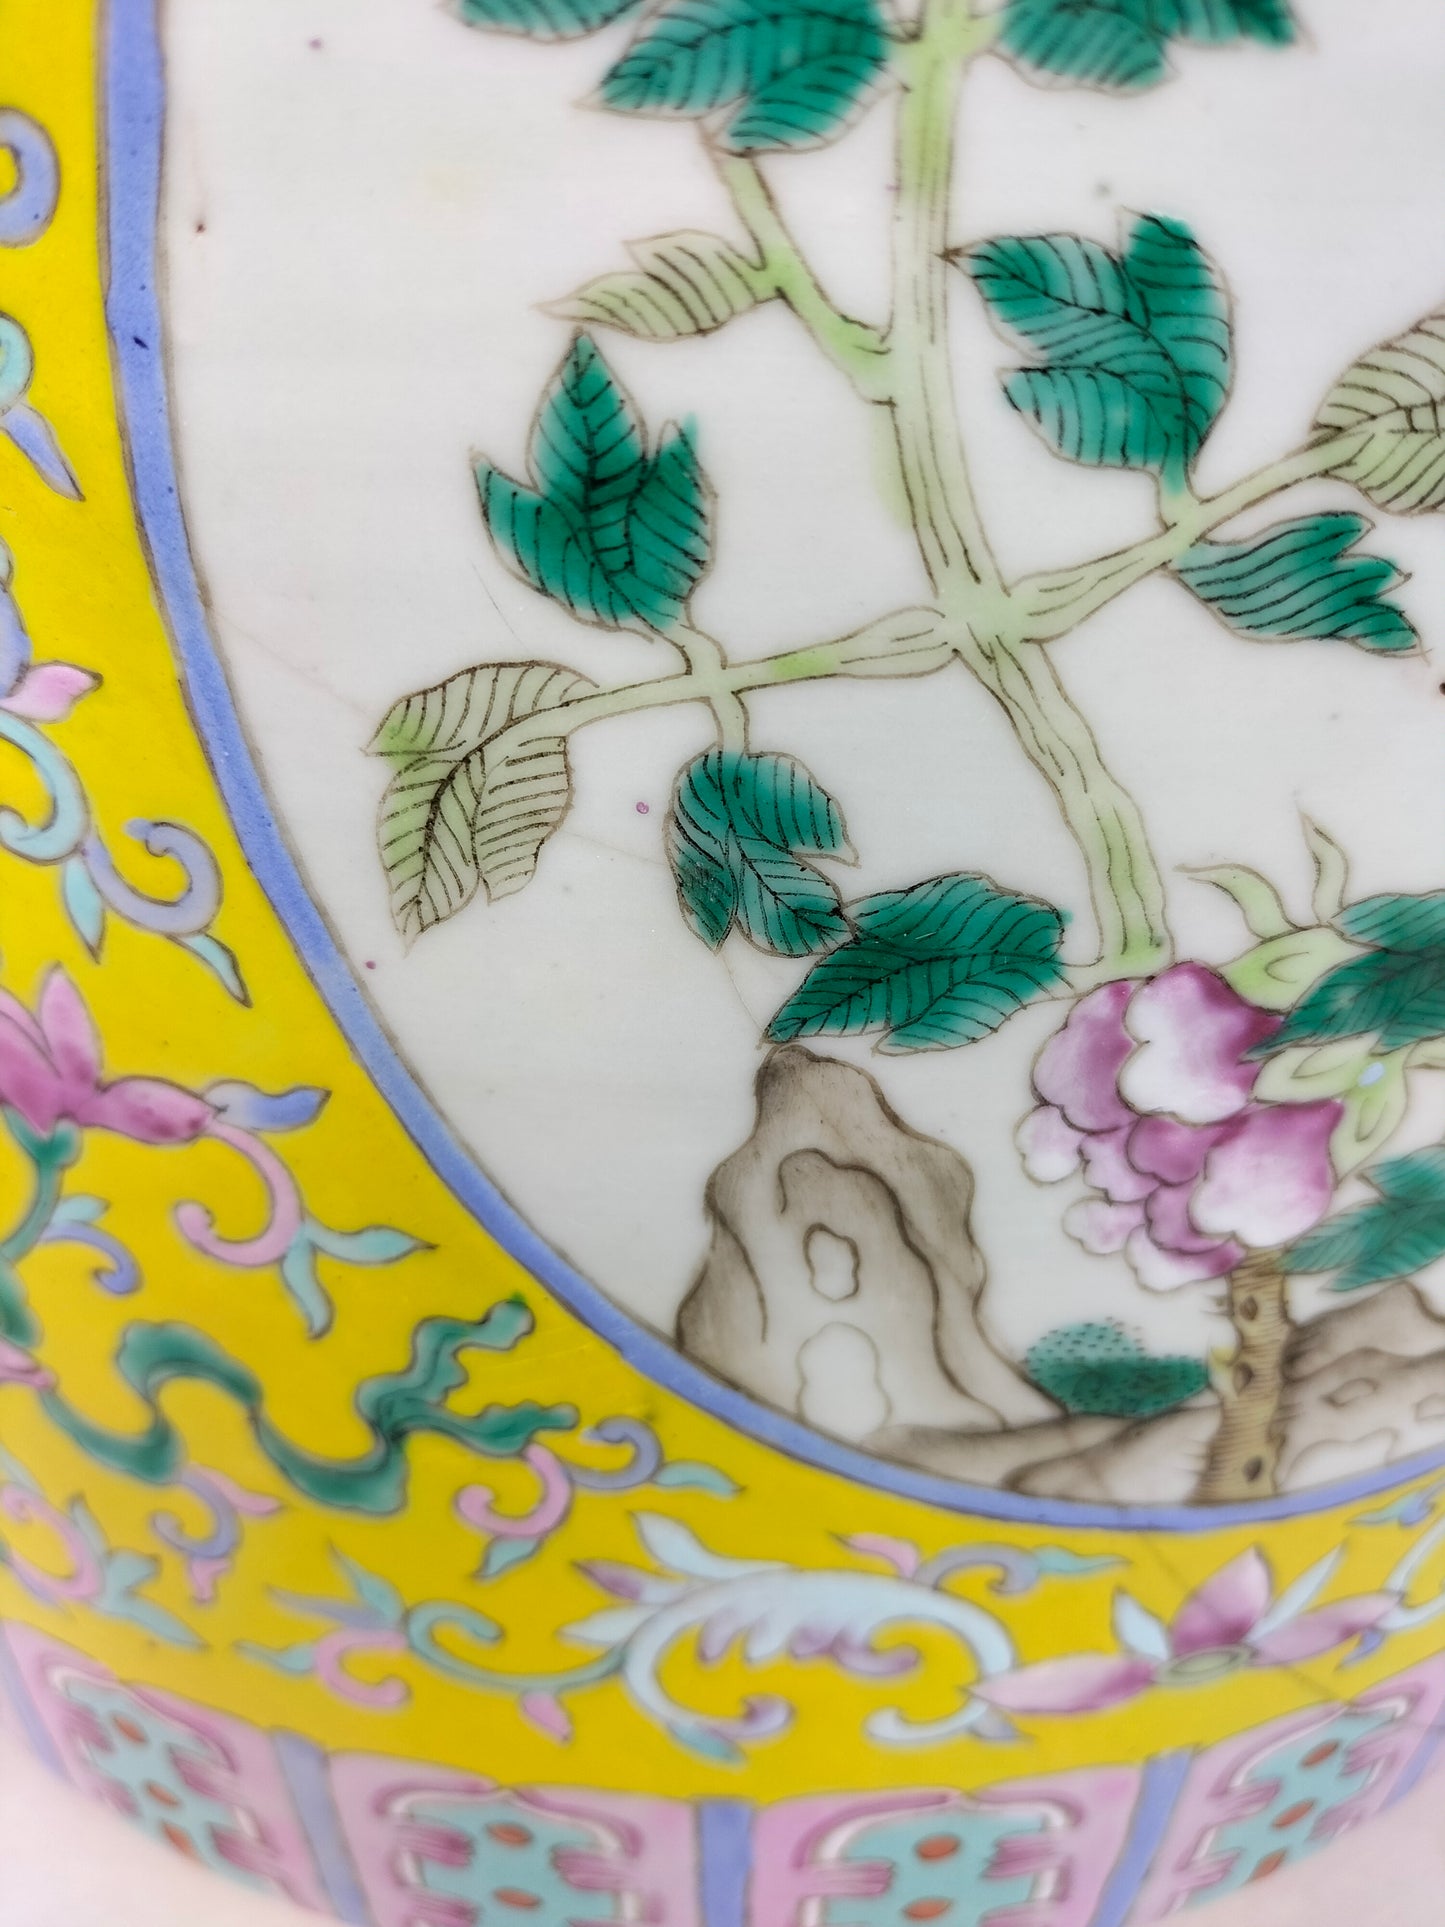 Grande vaso antigo da família rosa decorado com flores // Dinastia Qing - século XIX